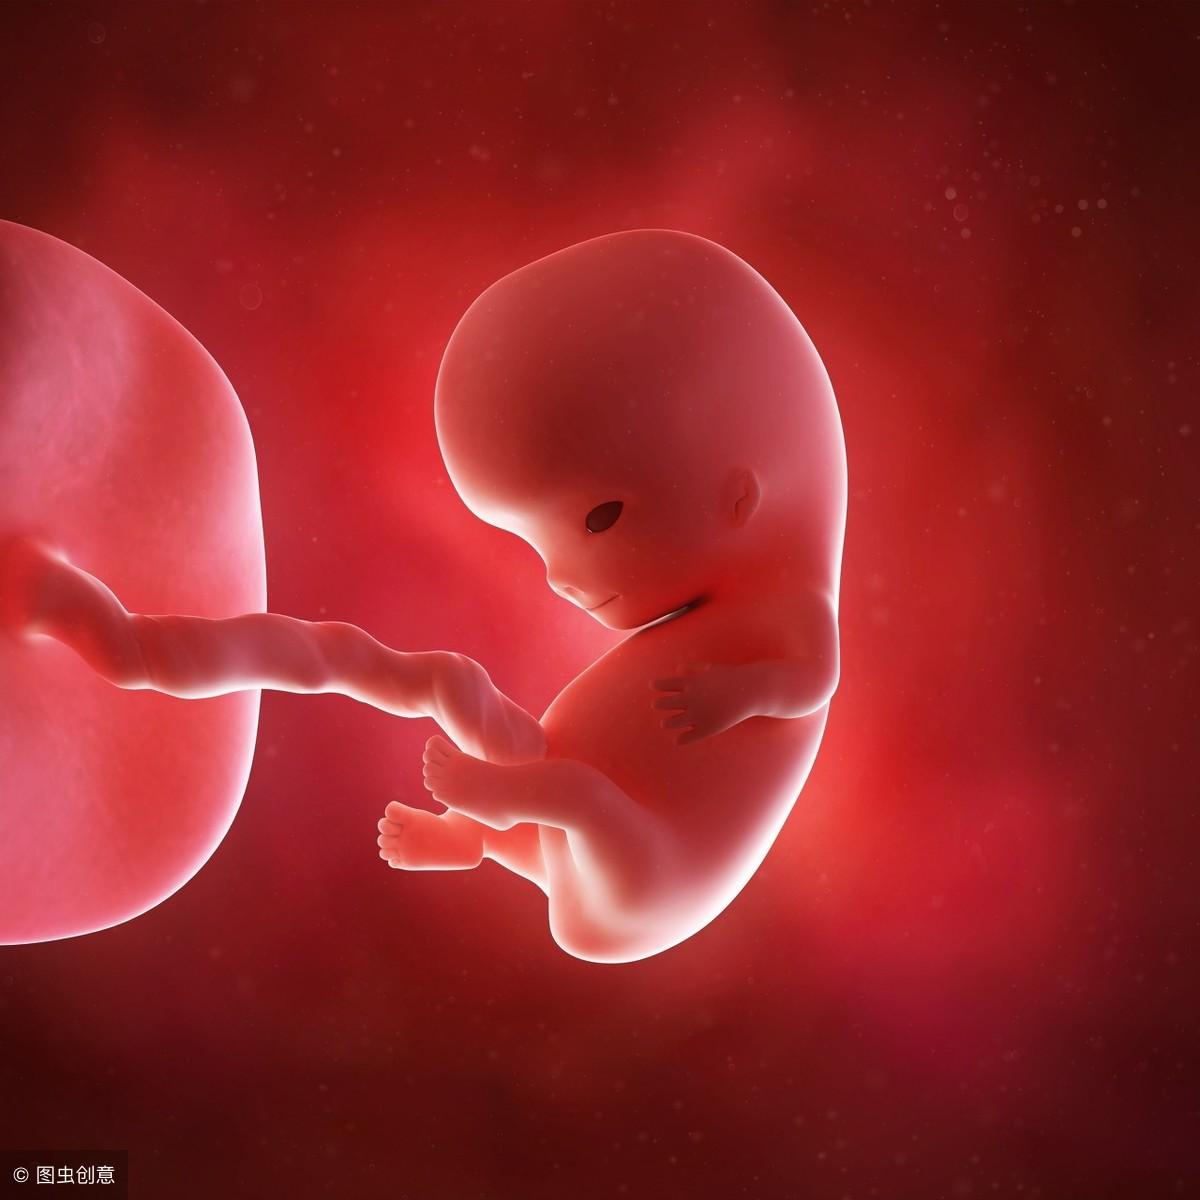 胎儿从小小的受精卵慢慢发育成人形,身体各器官随着孕周的增加,慢慢